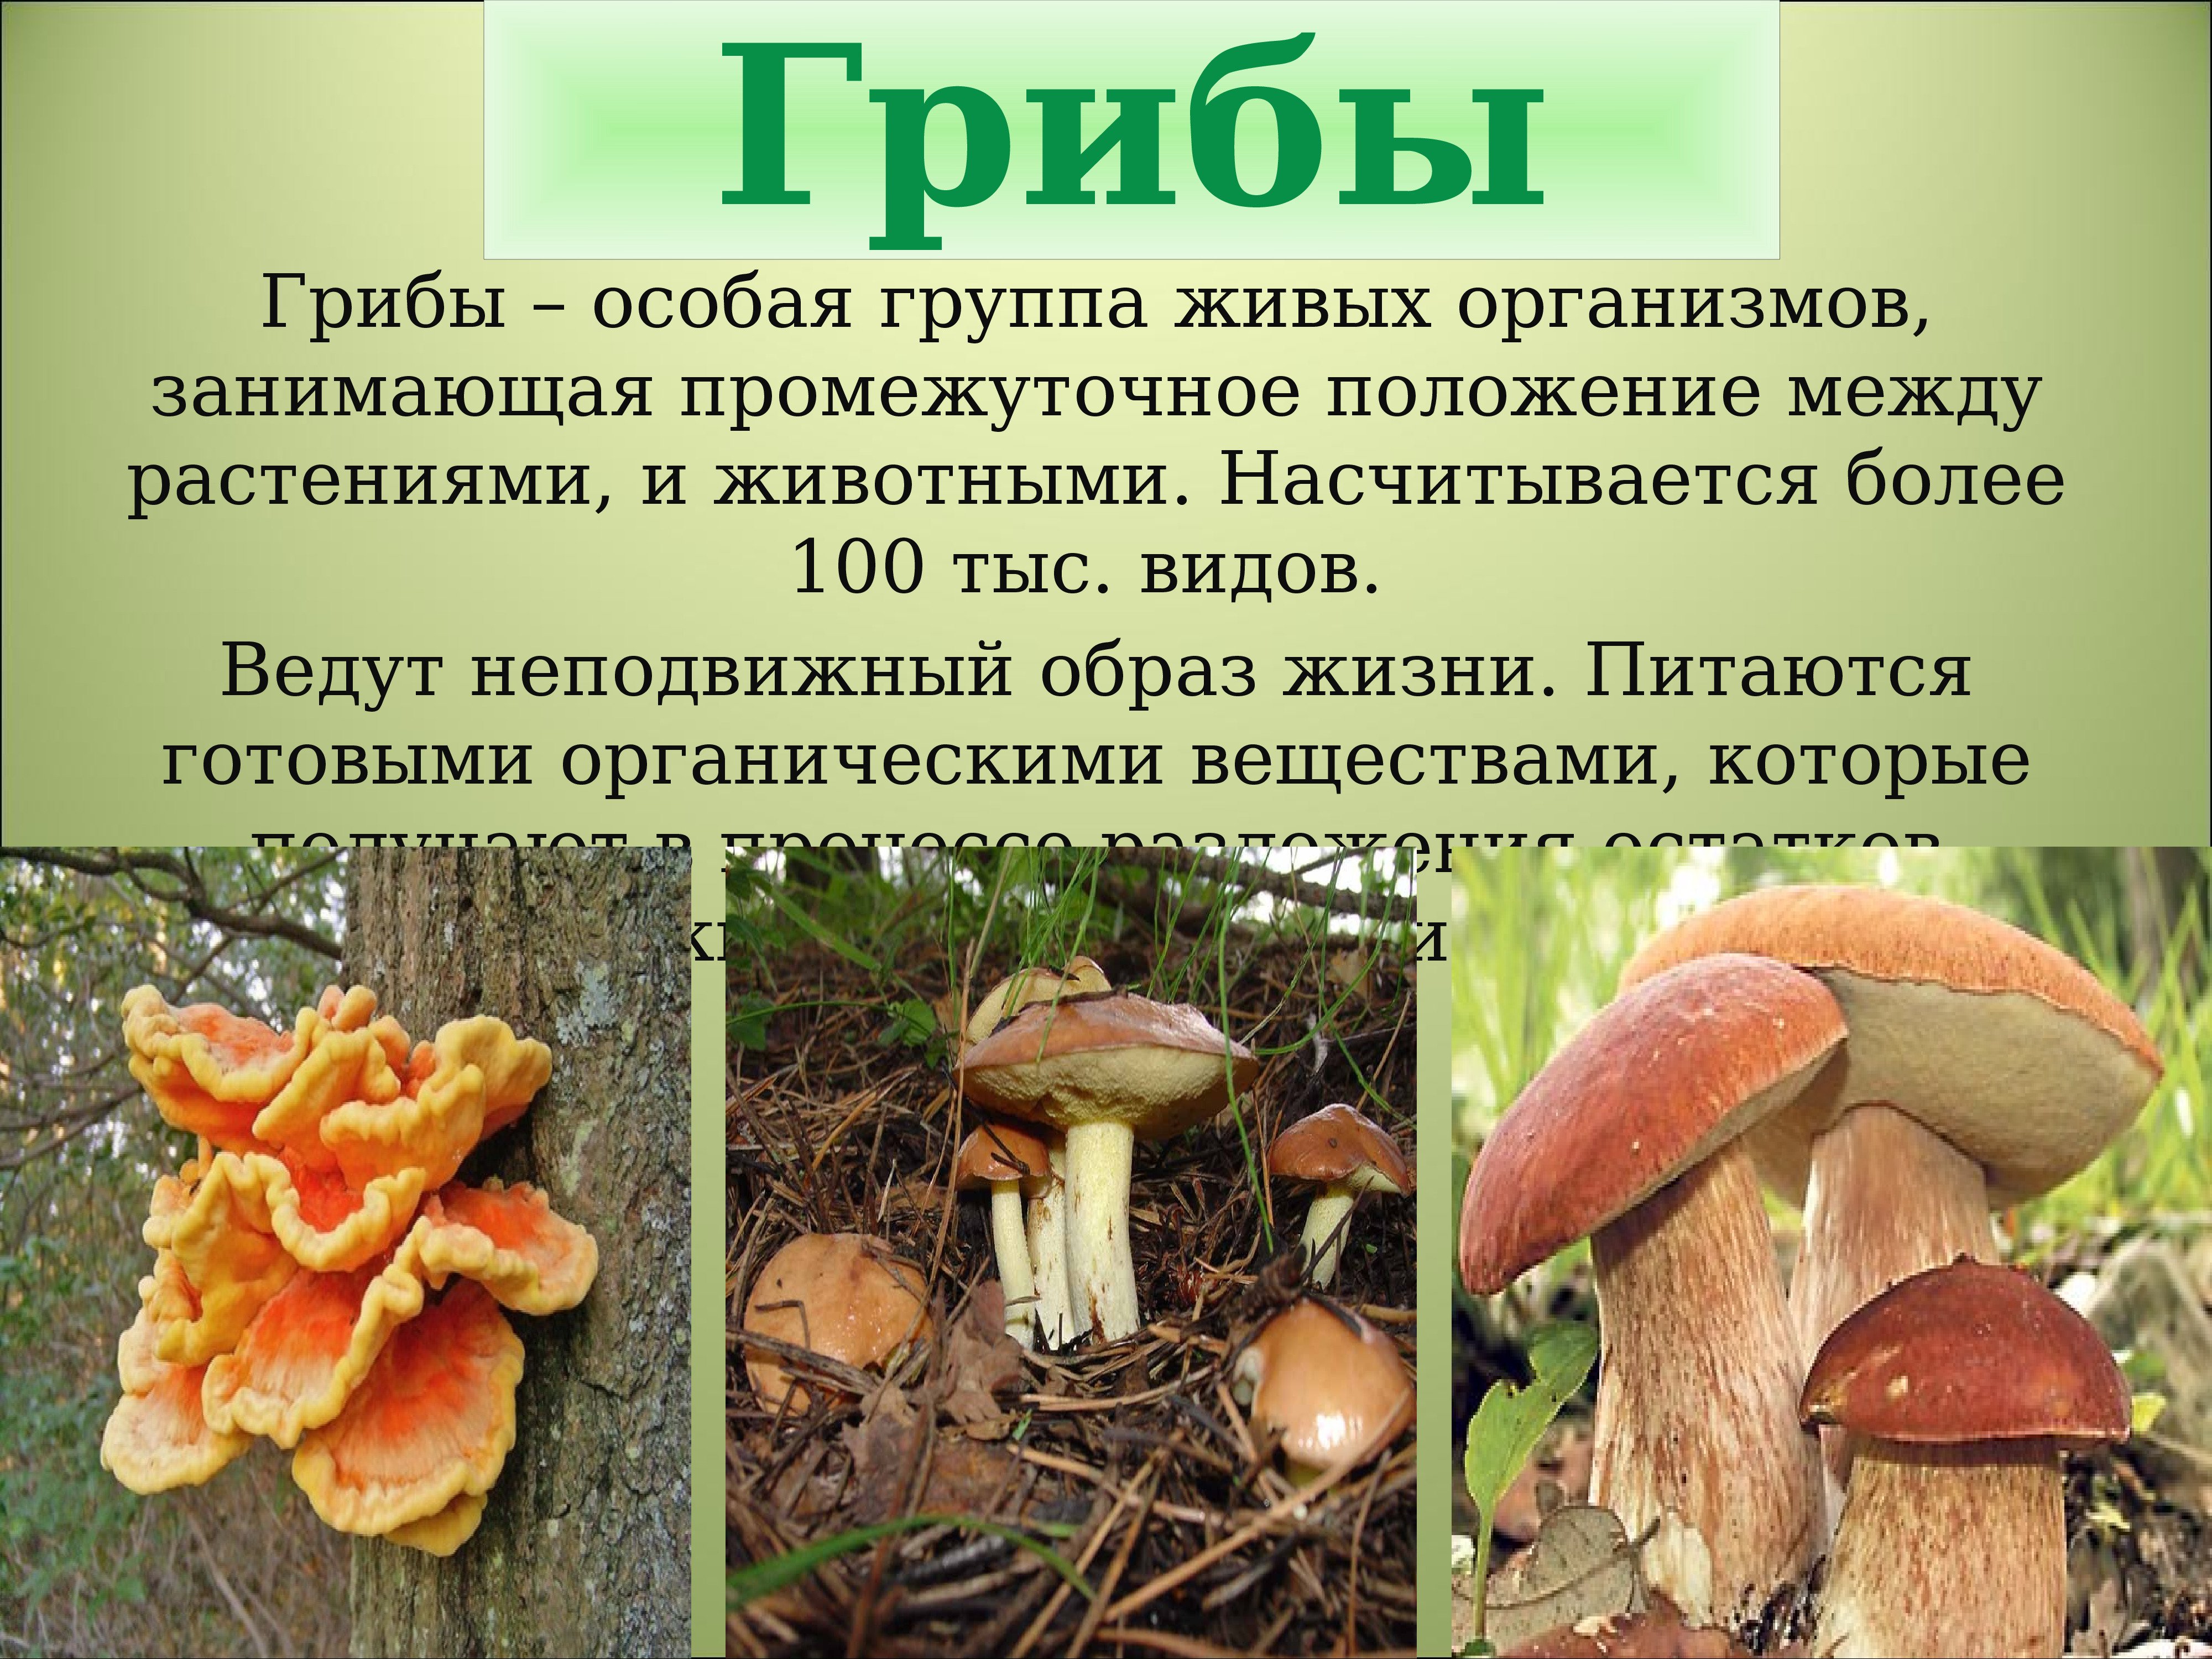 Какие классы есть в природе. Царство грибы многообразие грибов. Царства живых организмов грибы. Грибы особое царство живых организмов. Царство грибов презентация.